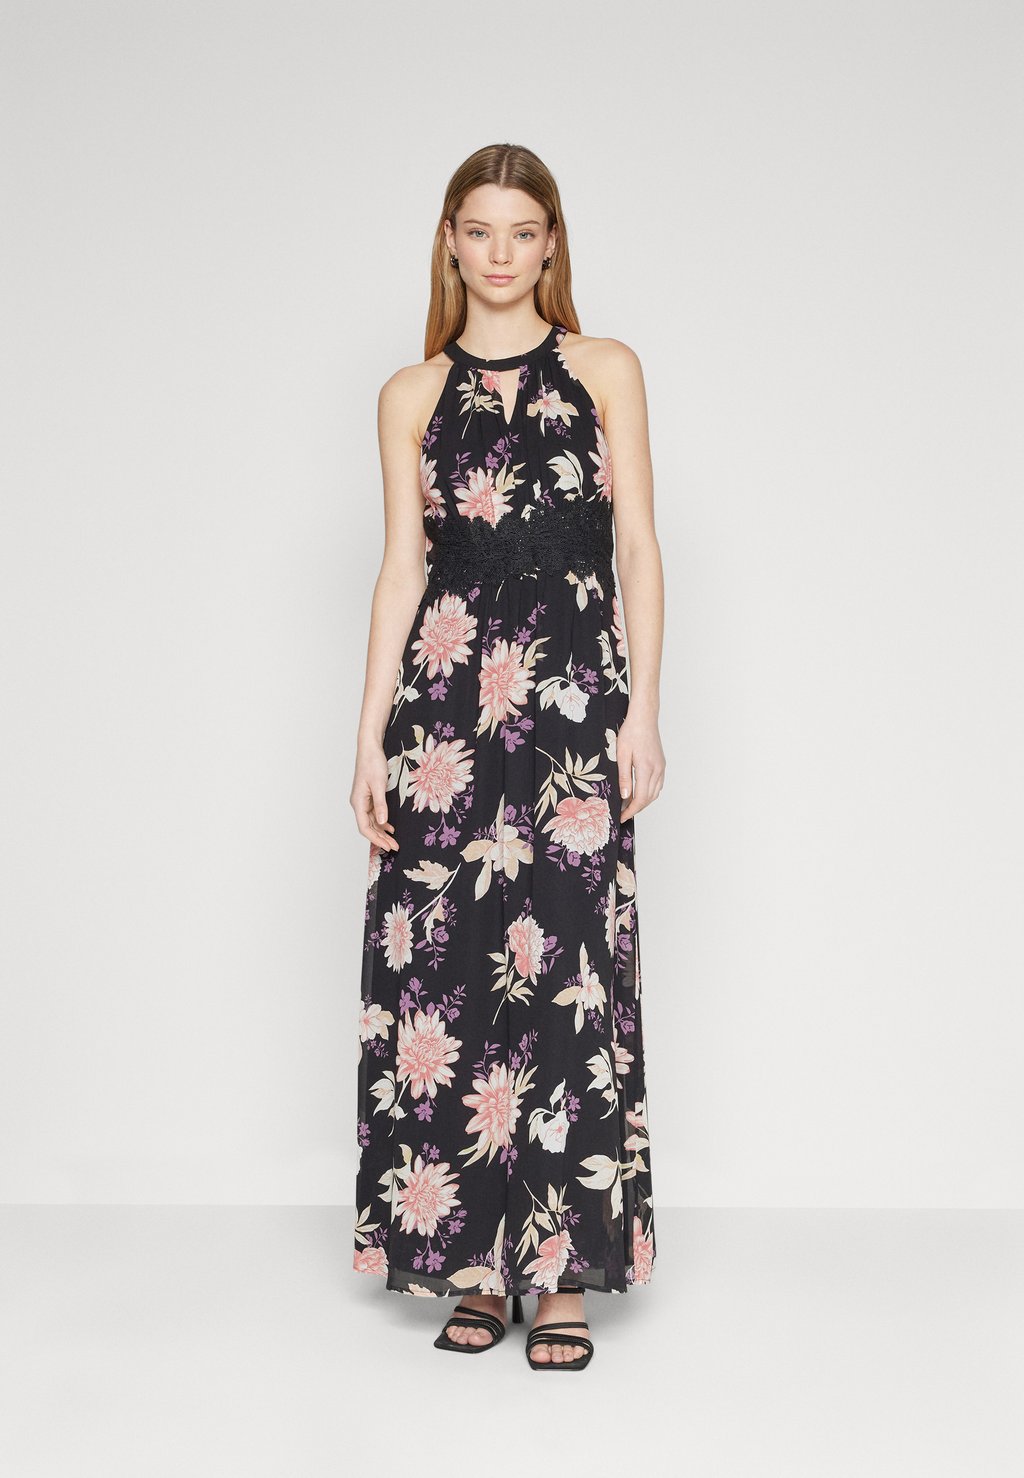 Платье для выпускного VIMILINA FLOWER MAXI DRESS VILA, цвет black aop/rose flower